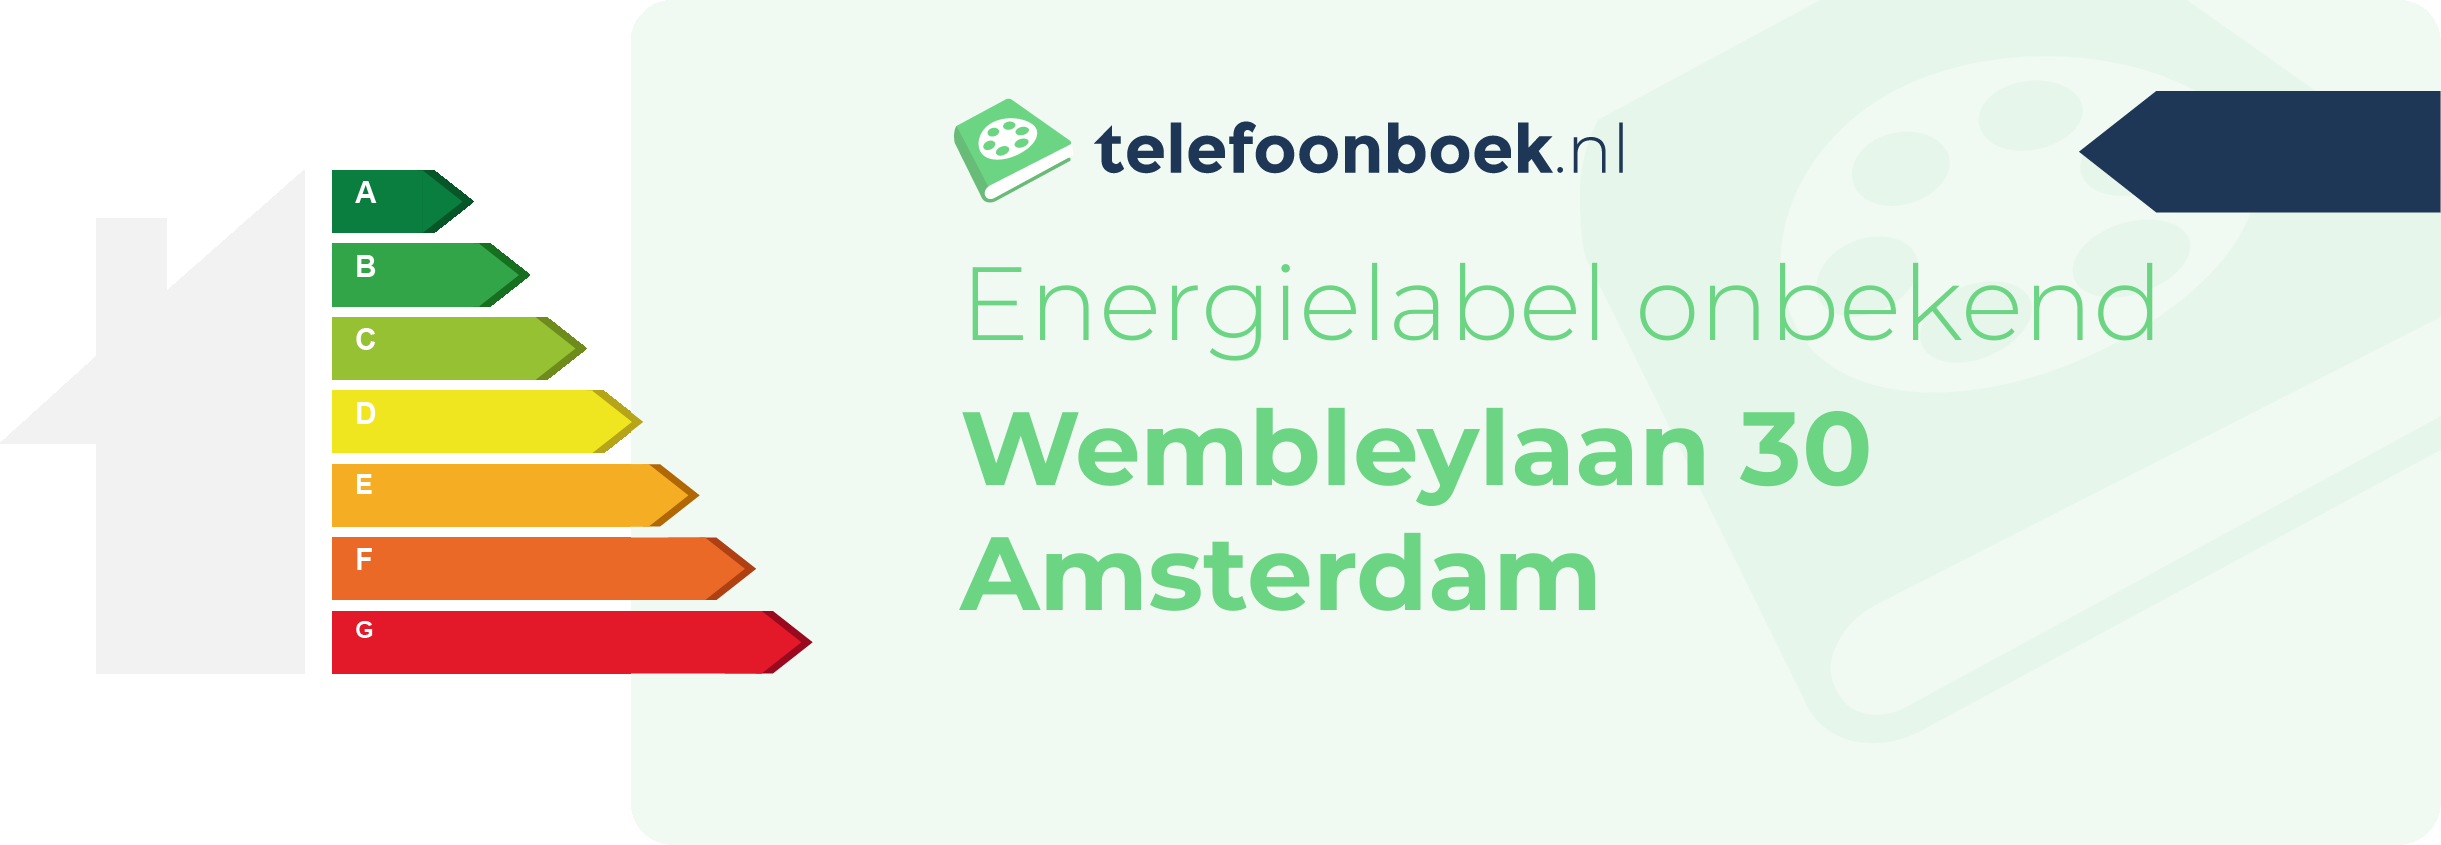 Energielabel Wembleylaan 30 Amsterdam